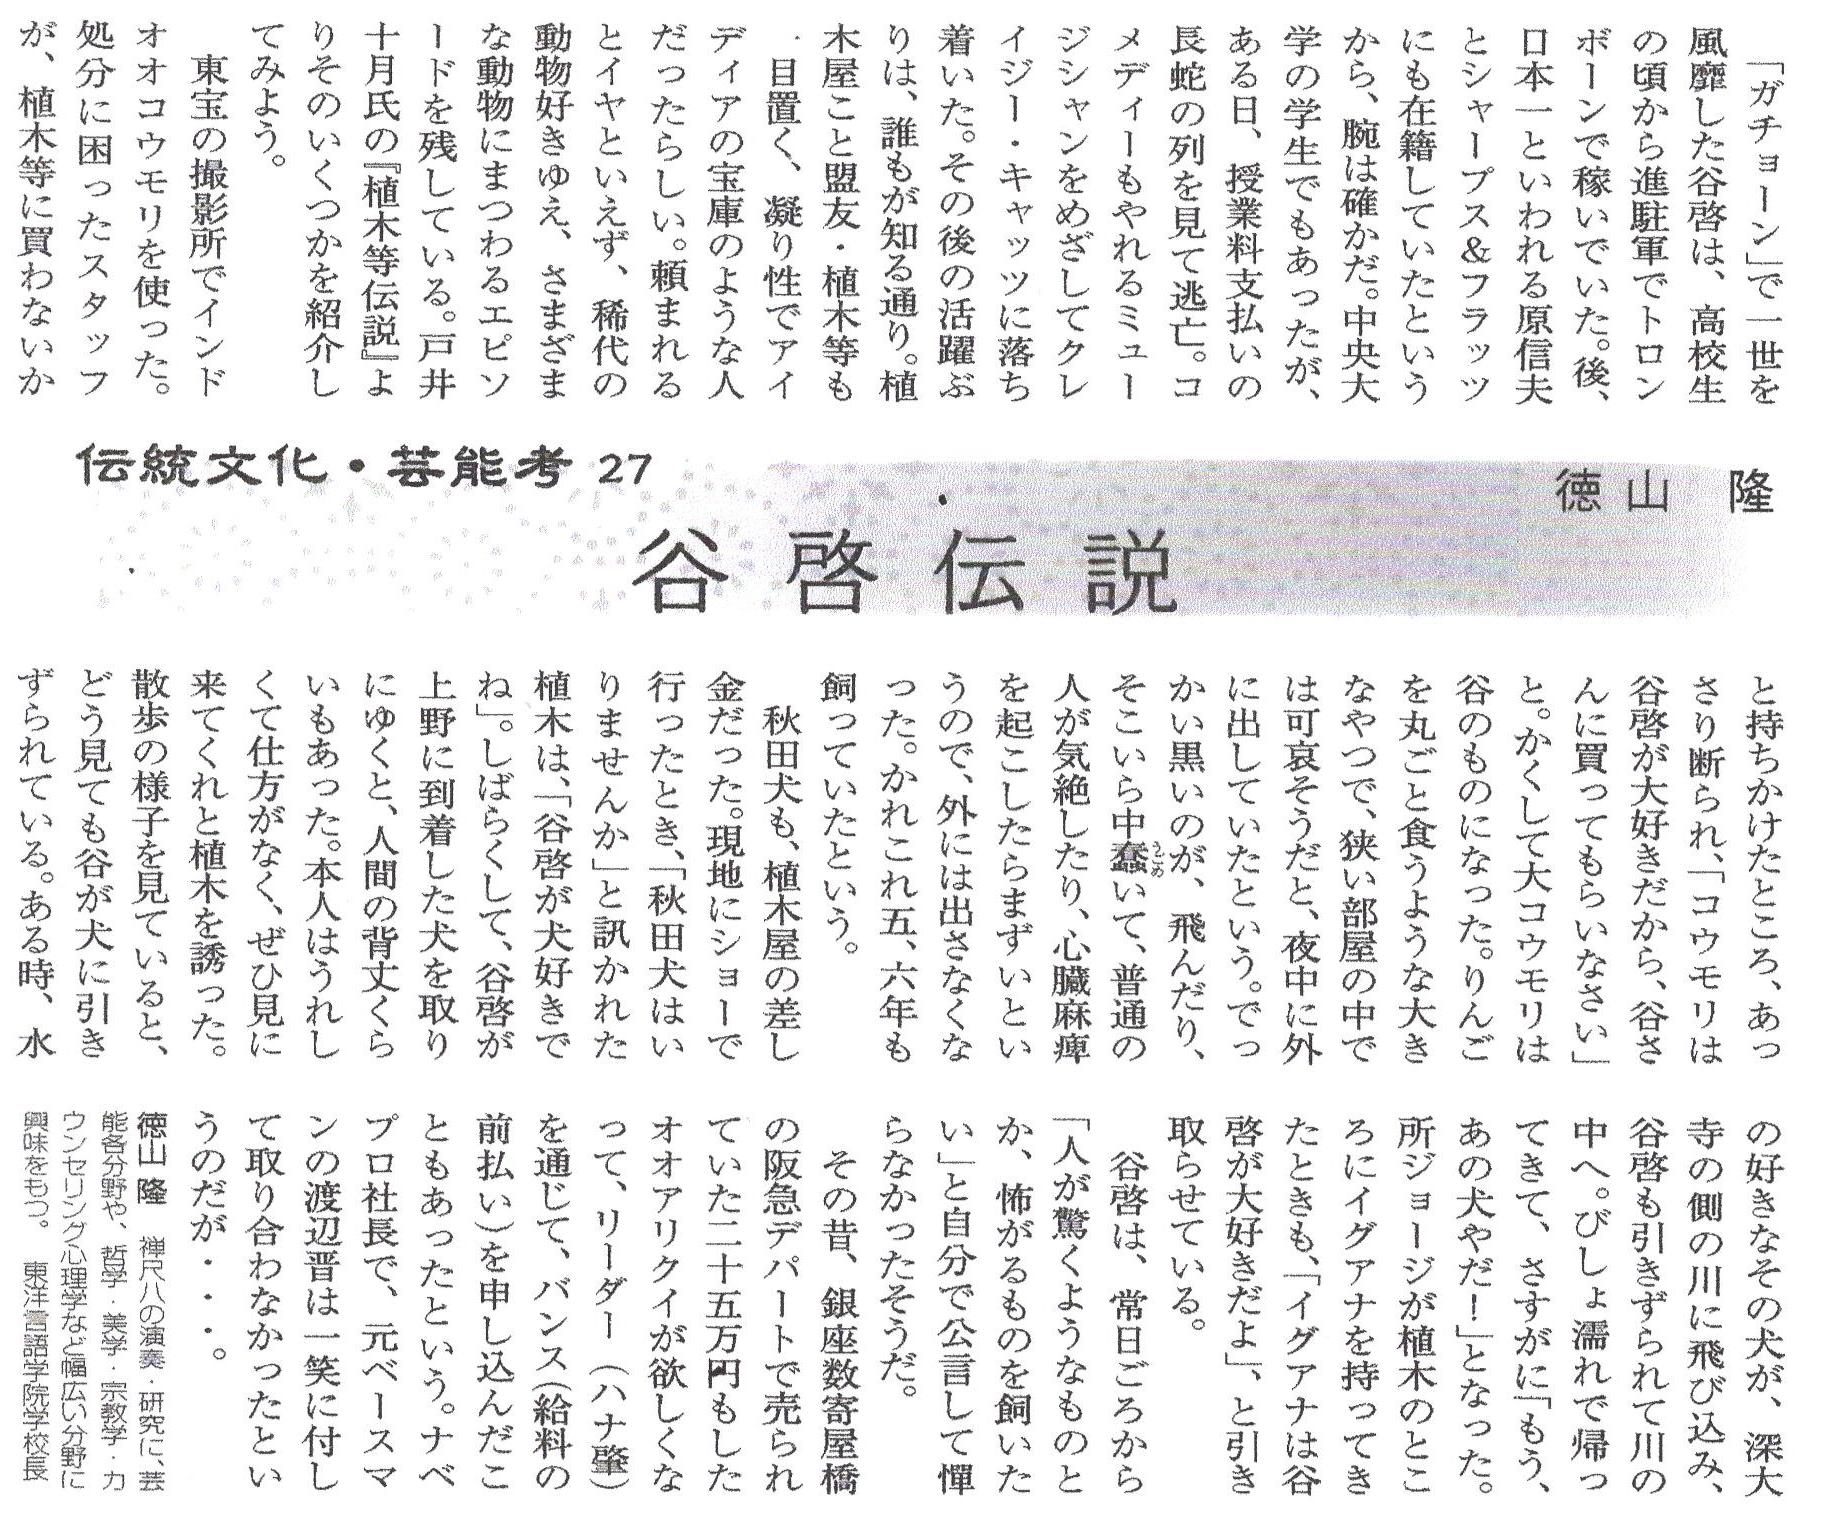 伝統文化新聞 第94号 27 谷啓伝説 徳山隆のホームページ